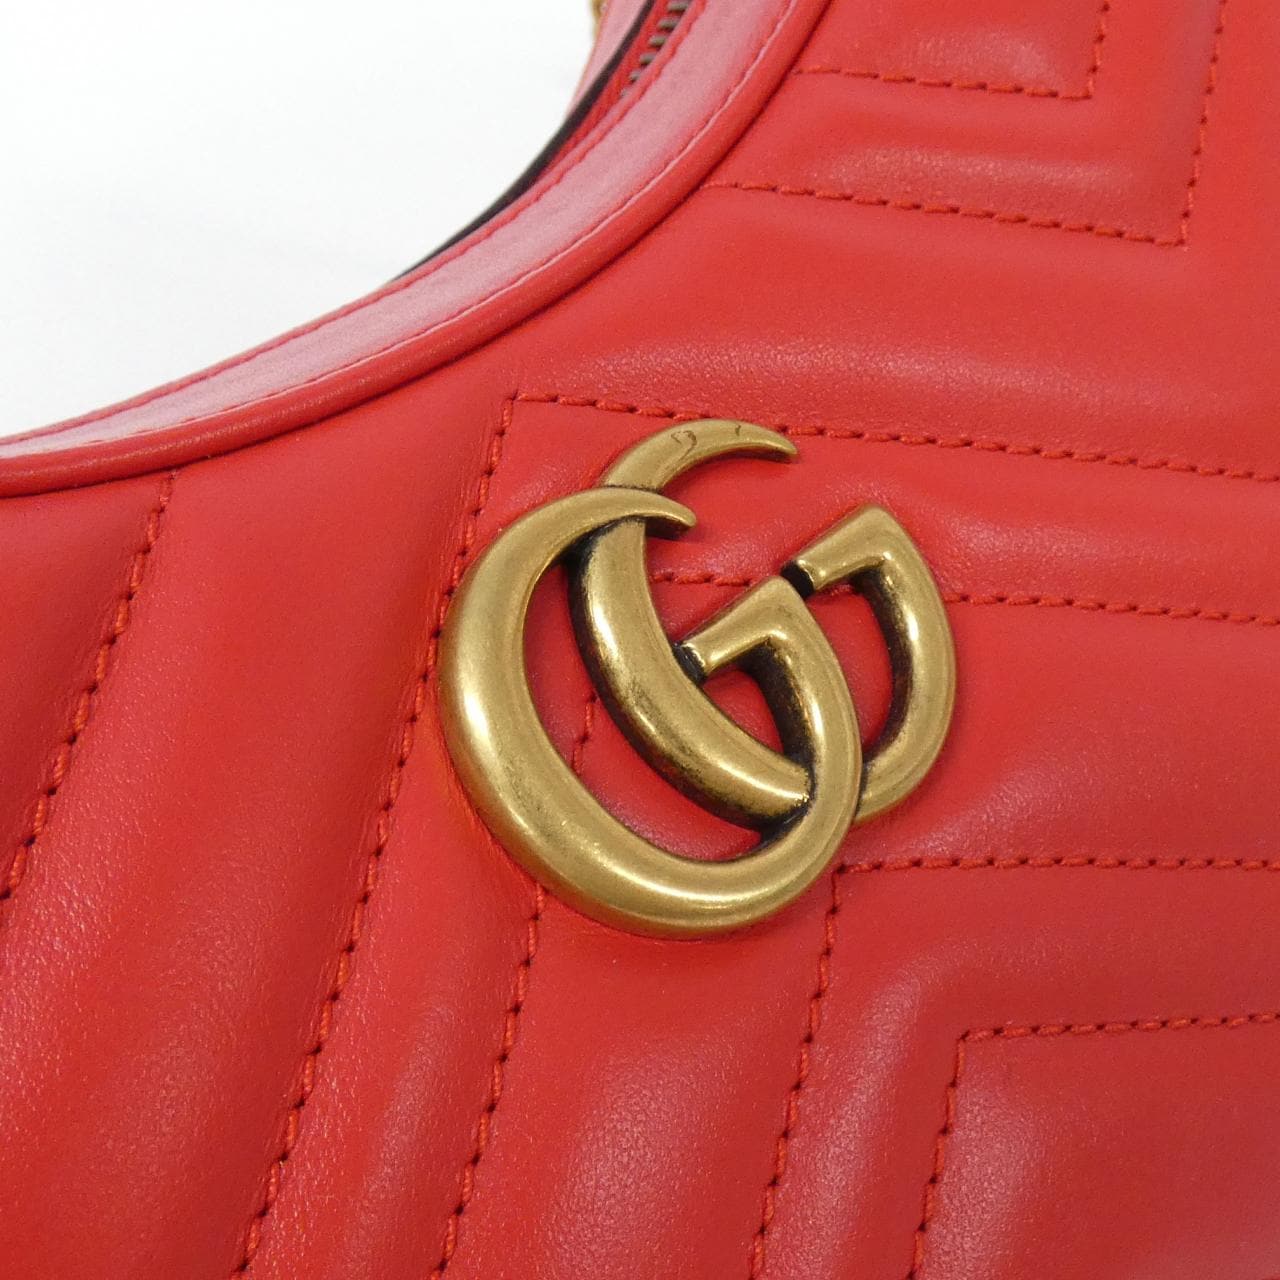 [新品] Gucci GG MARMONT 699514 DTDHT 包